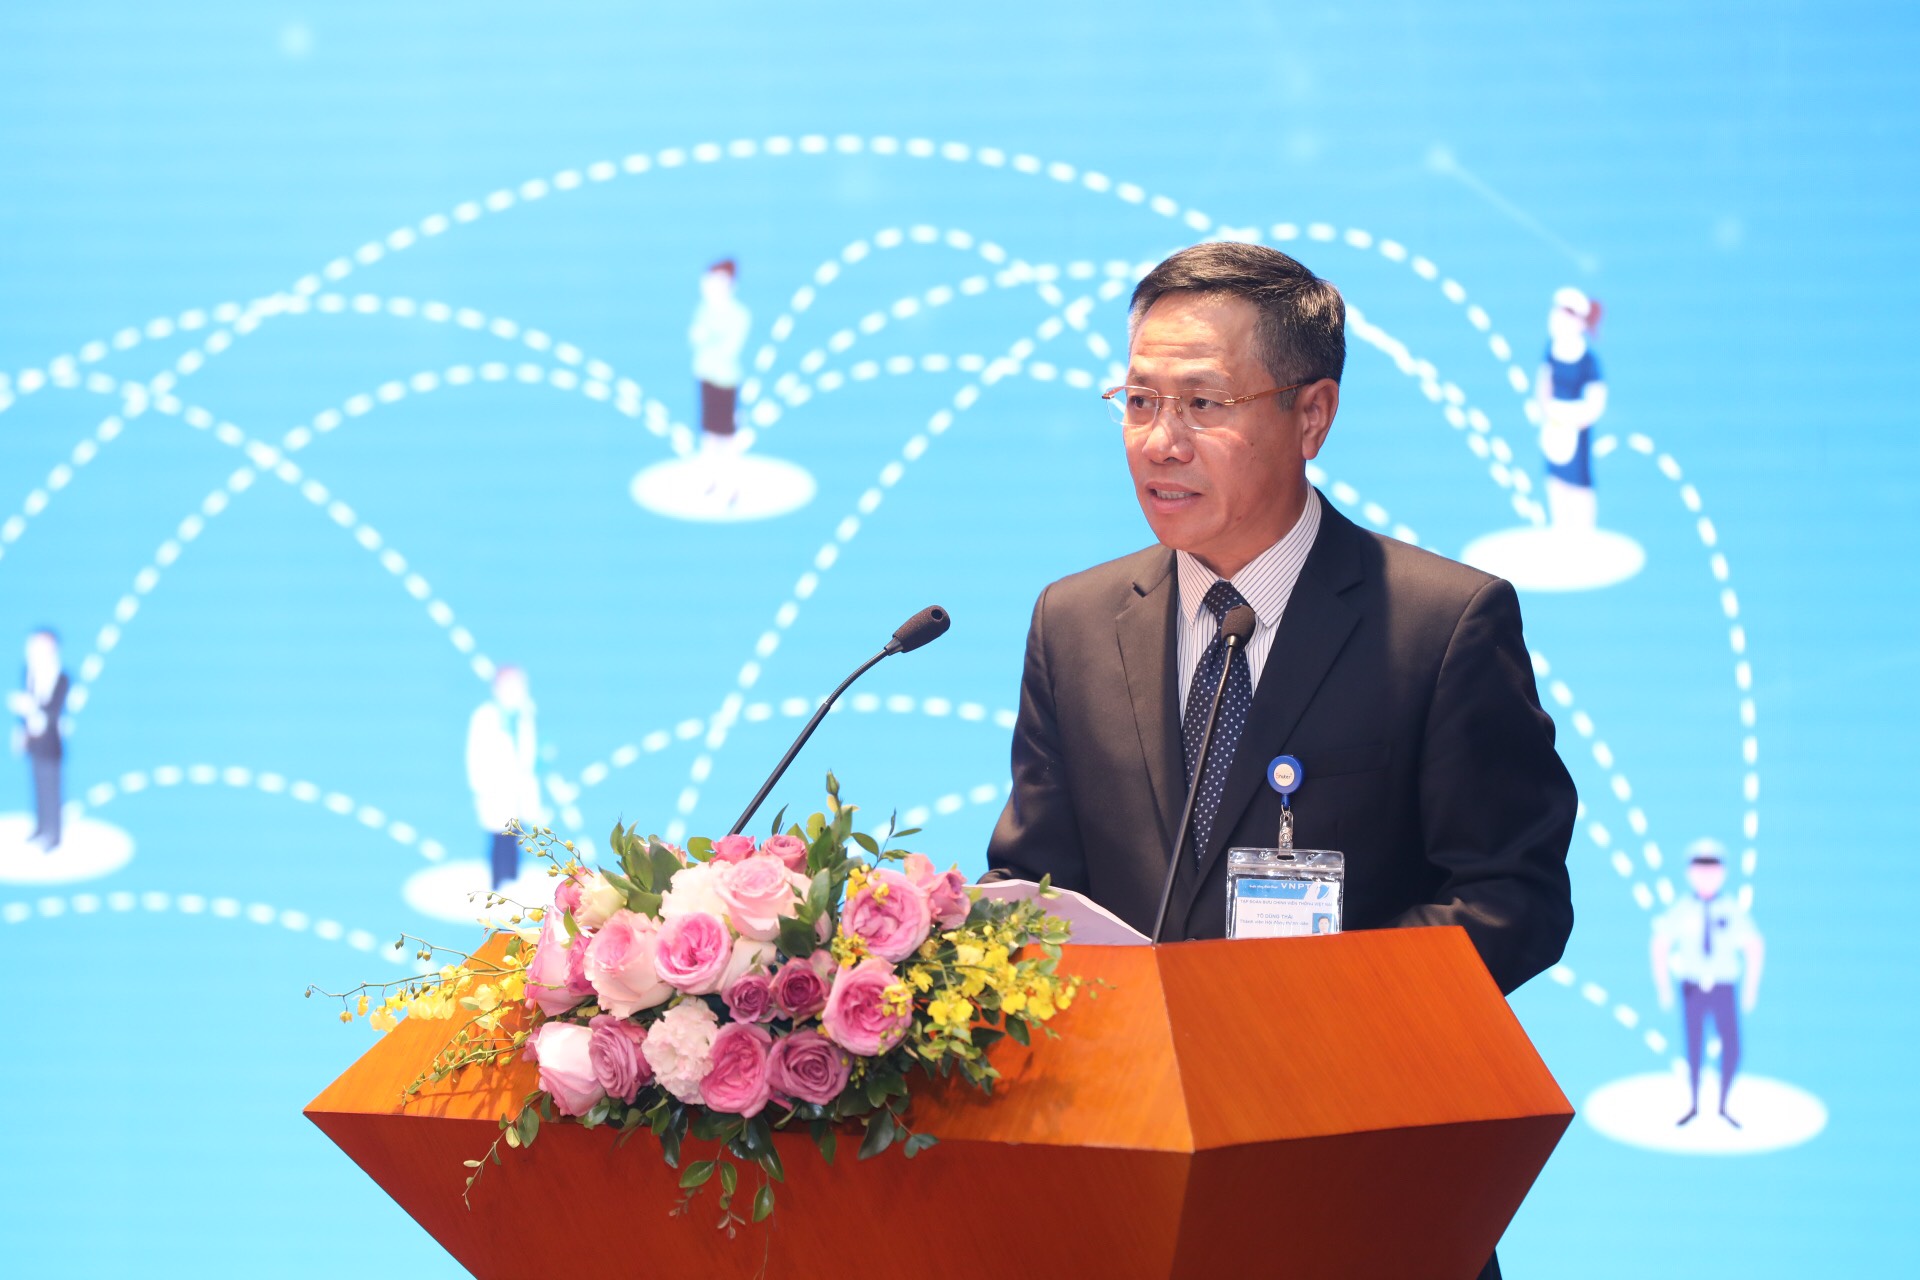 VNPT trở thành Nhà cung cấp dịch vụ Mobile Money đầu tiên tại Việt Nam